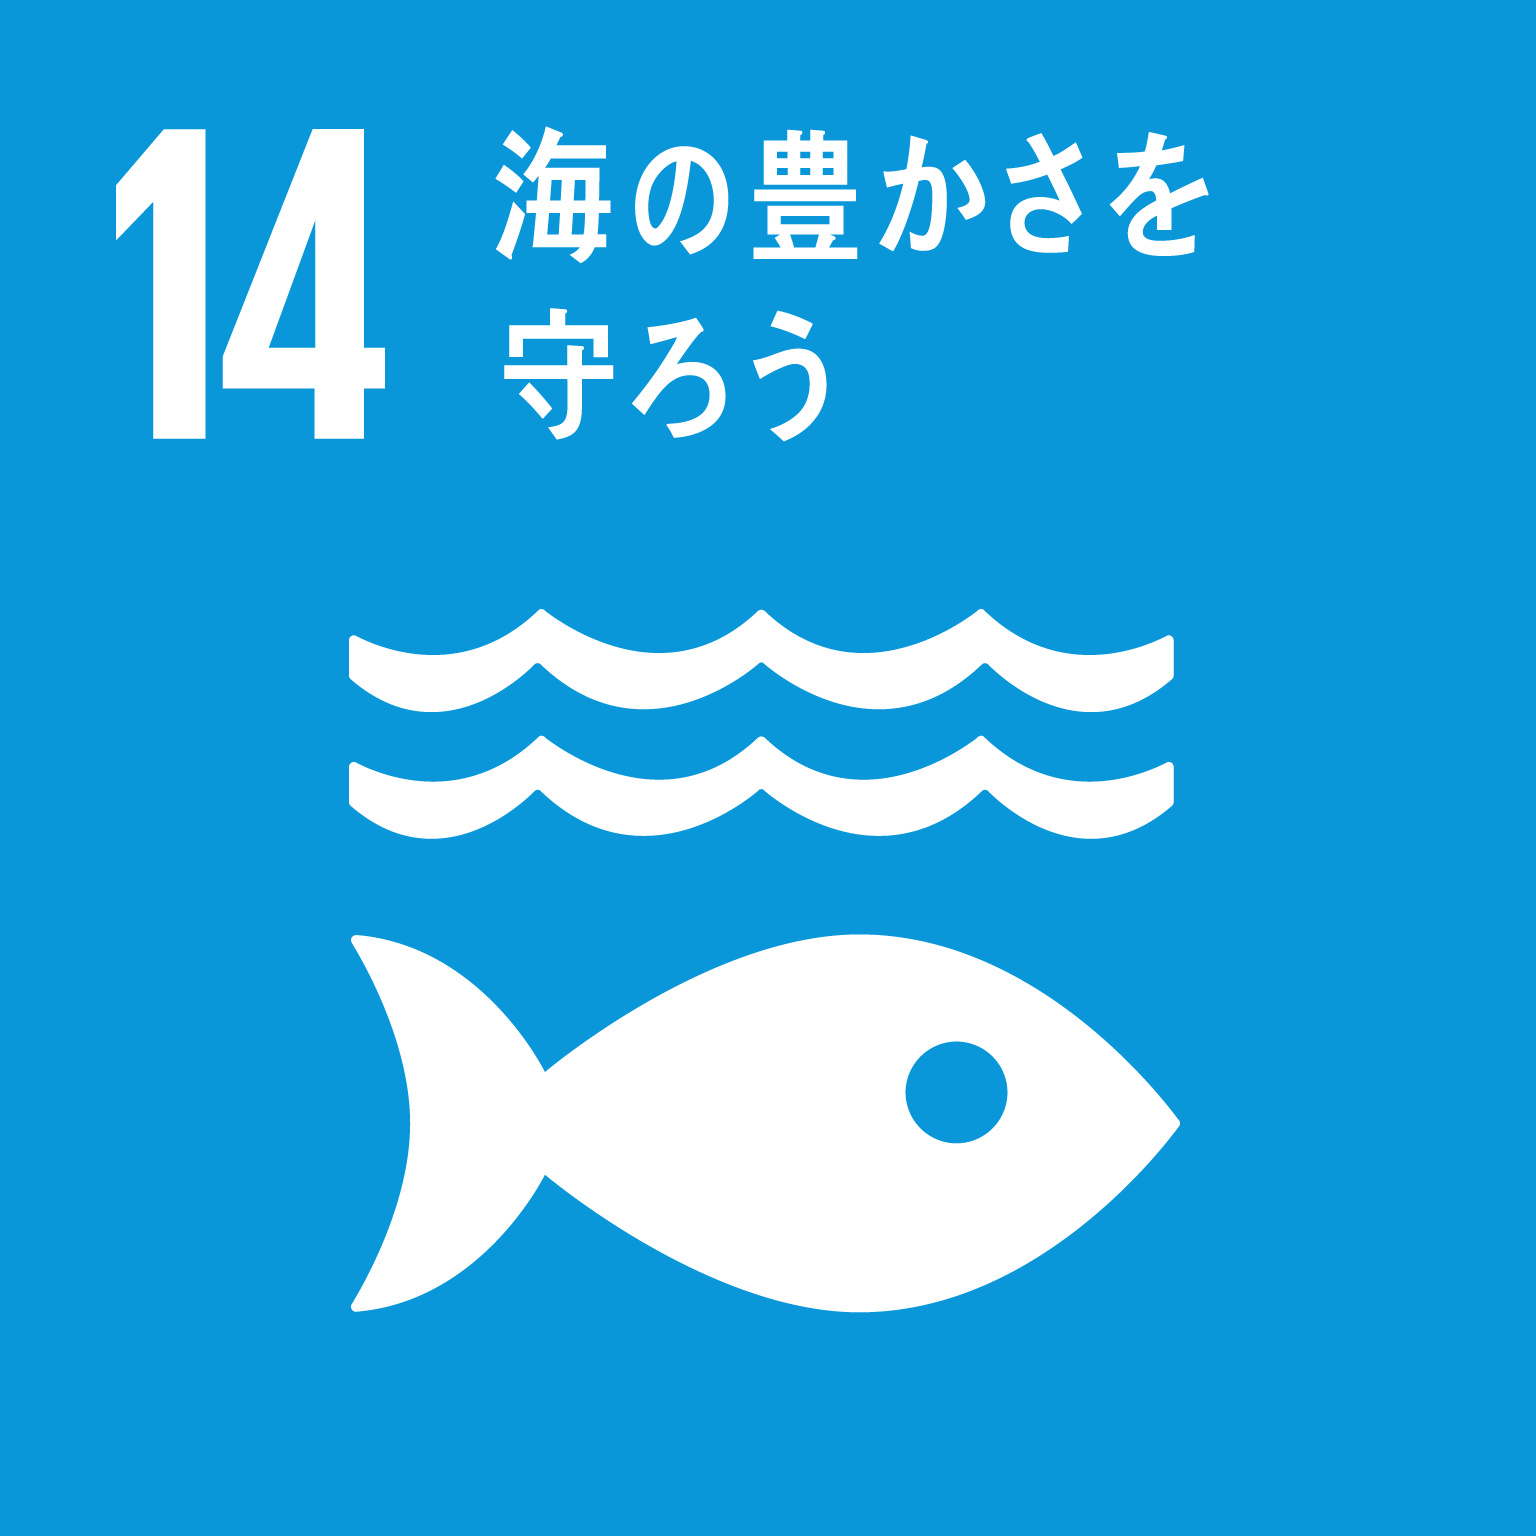 目標14海の豊かさを守ろうのロゴ